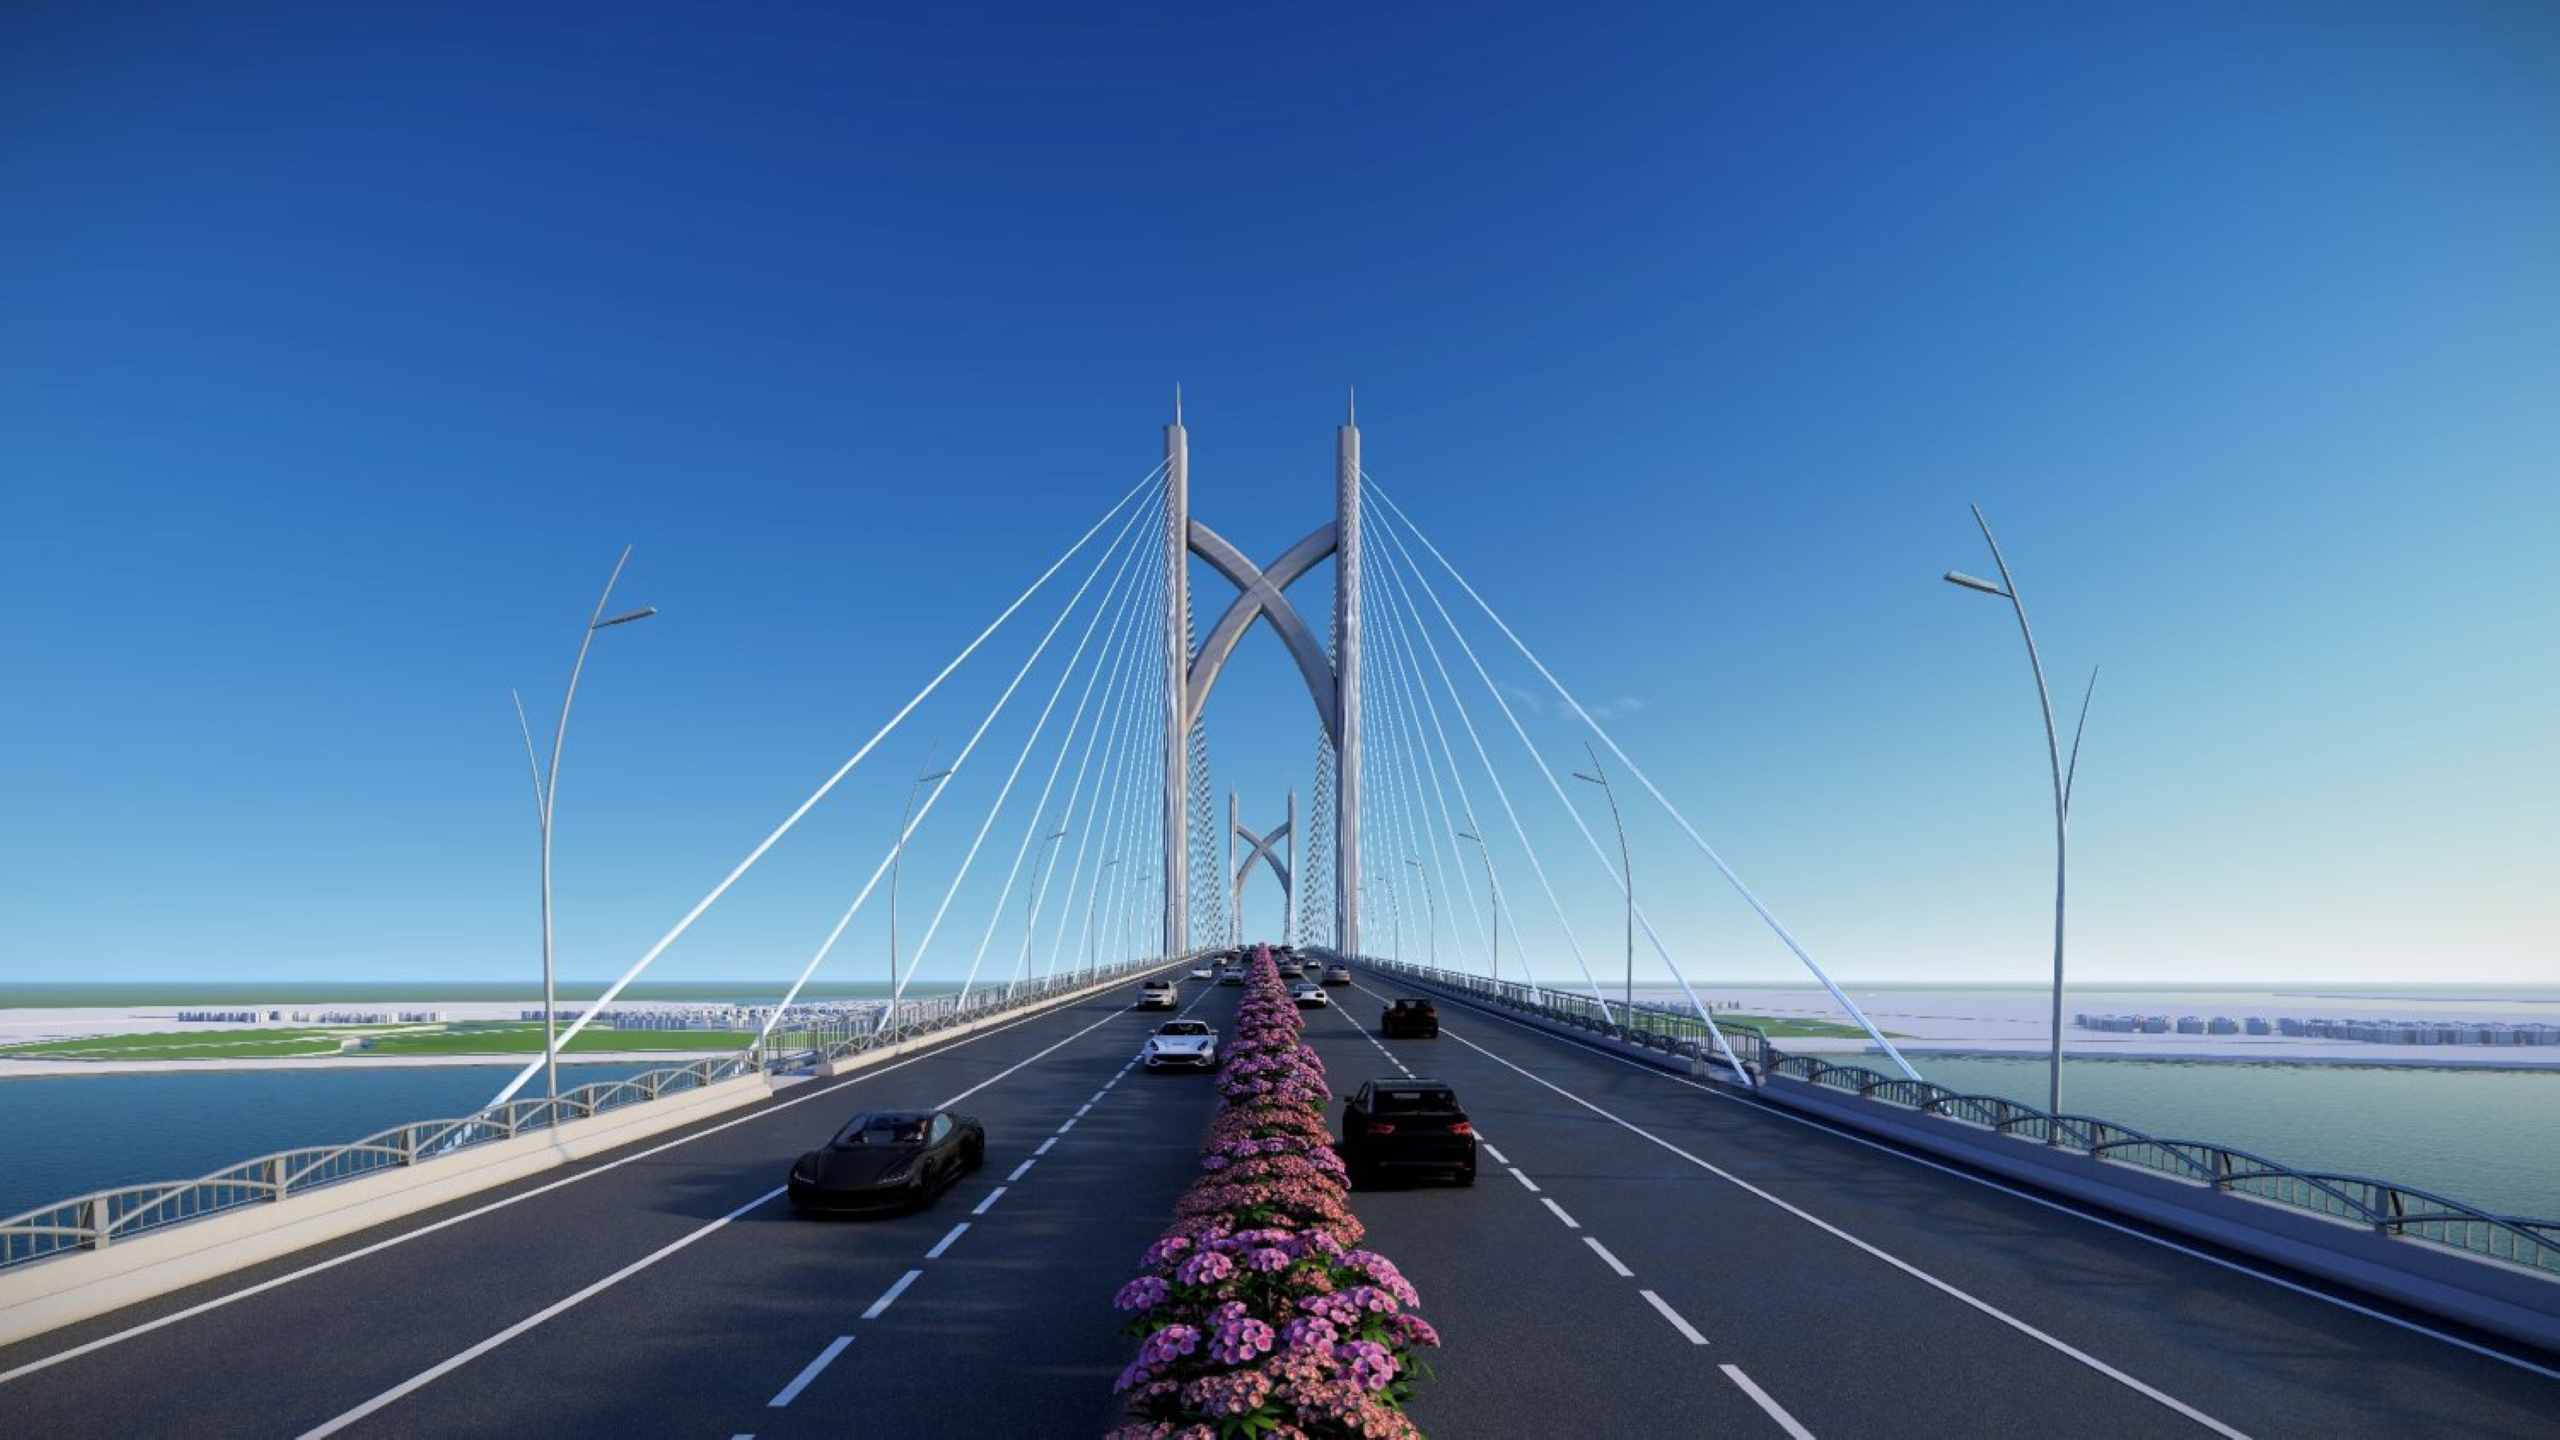 Theo thiết kế, cầu Cần Giờ được xây dựng theo dạng dây văng, 6 làn xe (4 làn cơ giới, hai làn thô sơ), vận tốc 60 km/h. Ngoài cầu chính, trong dự án còn một số cầu nhỏ vượt sông Chà, Tắc sông Chà và cầu rạch Mương Ngang.